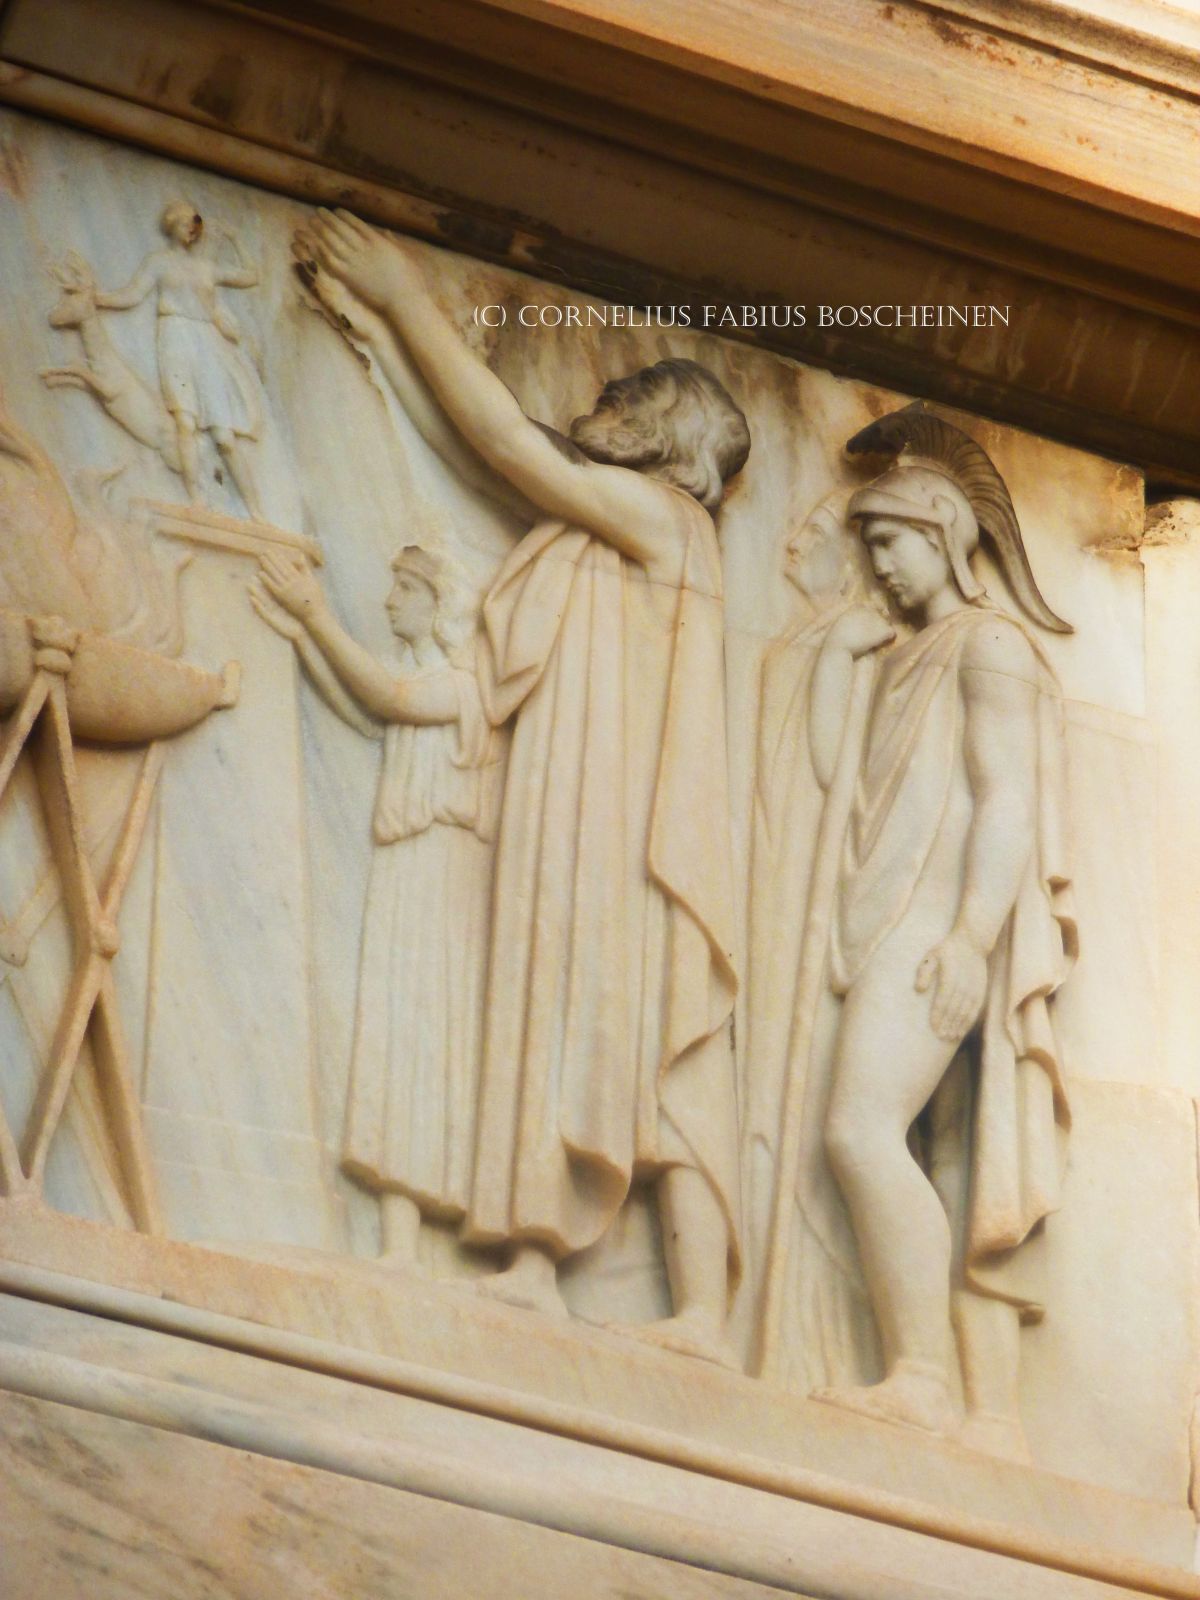 Das Schliemann Mausoleum in Athen. Szenerie im Fries.